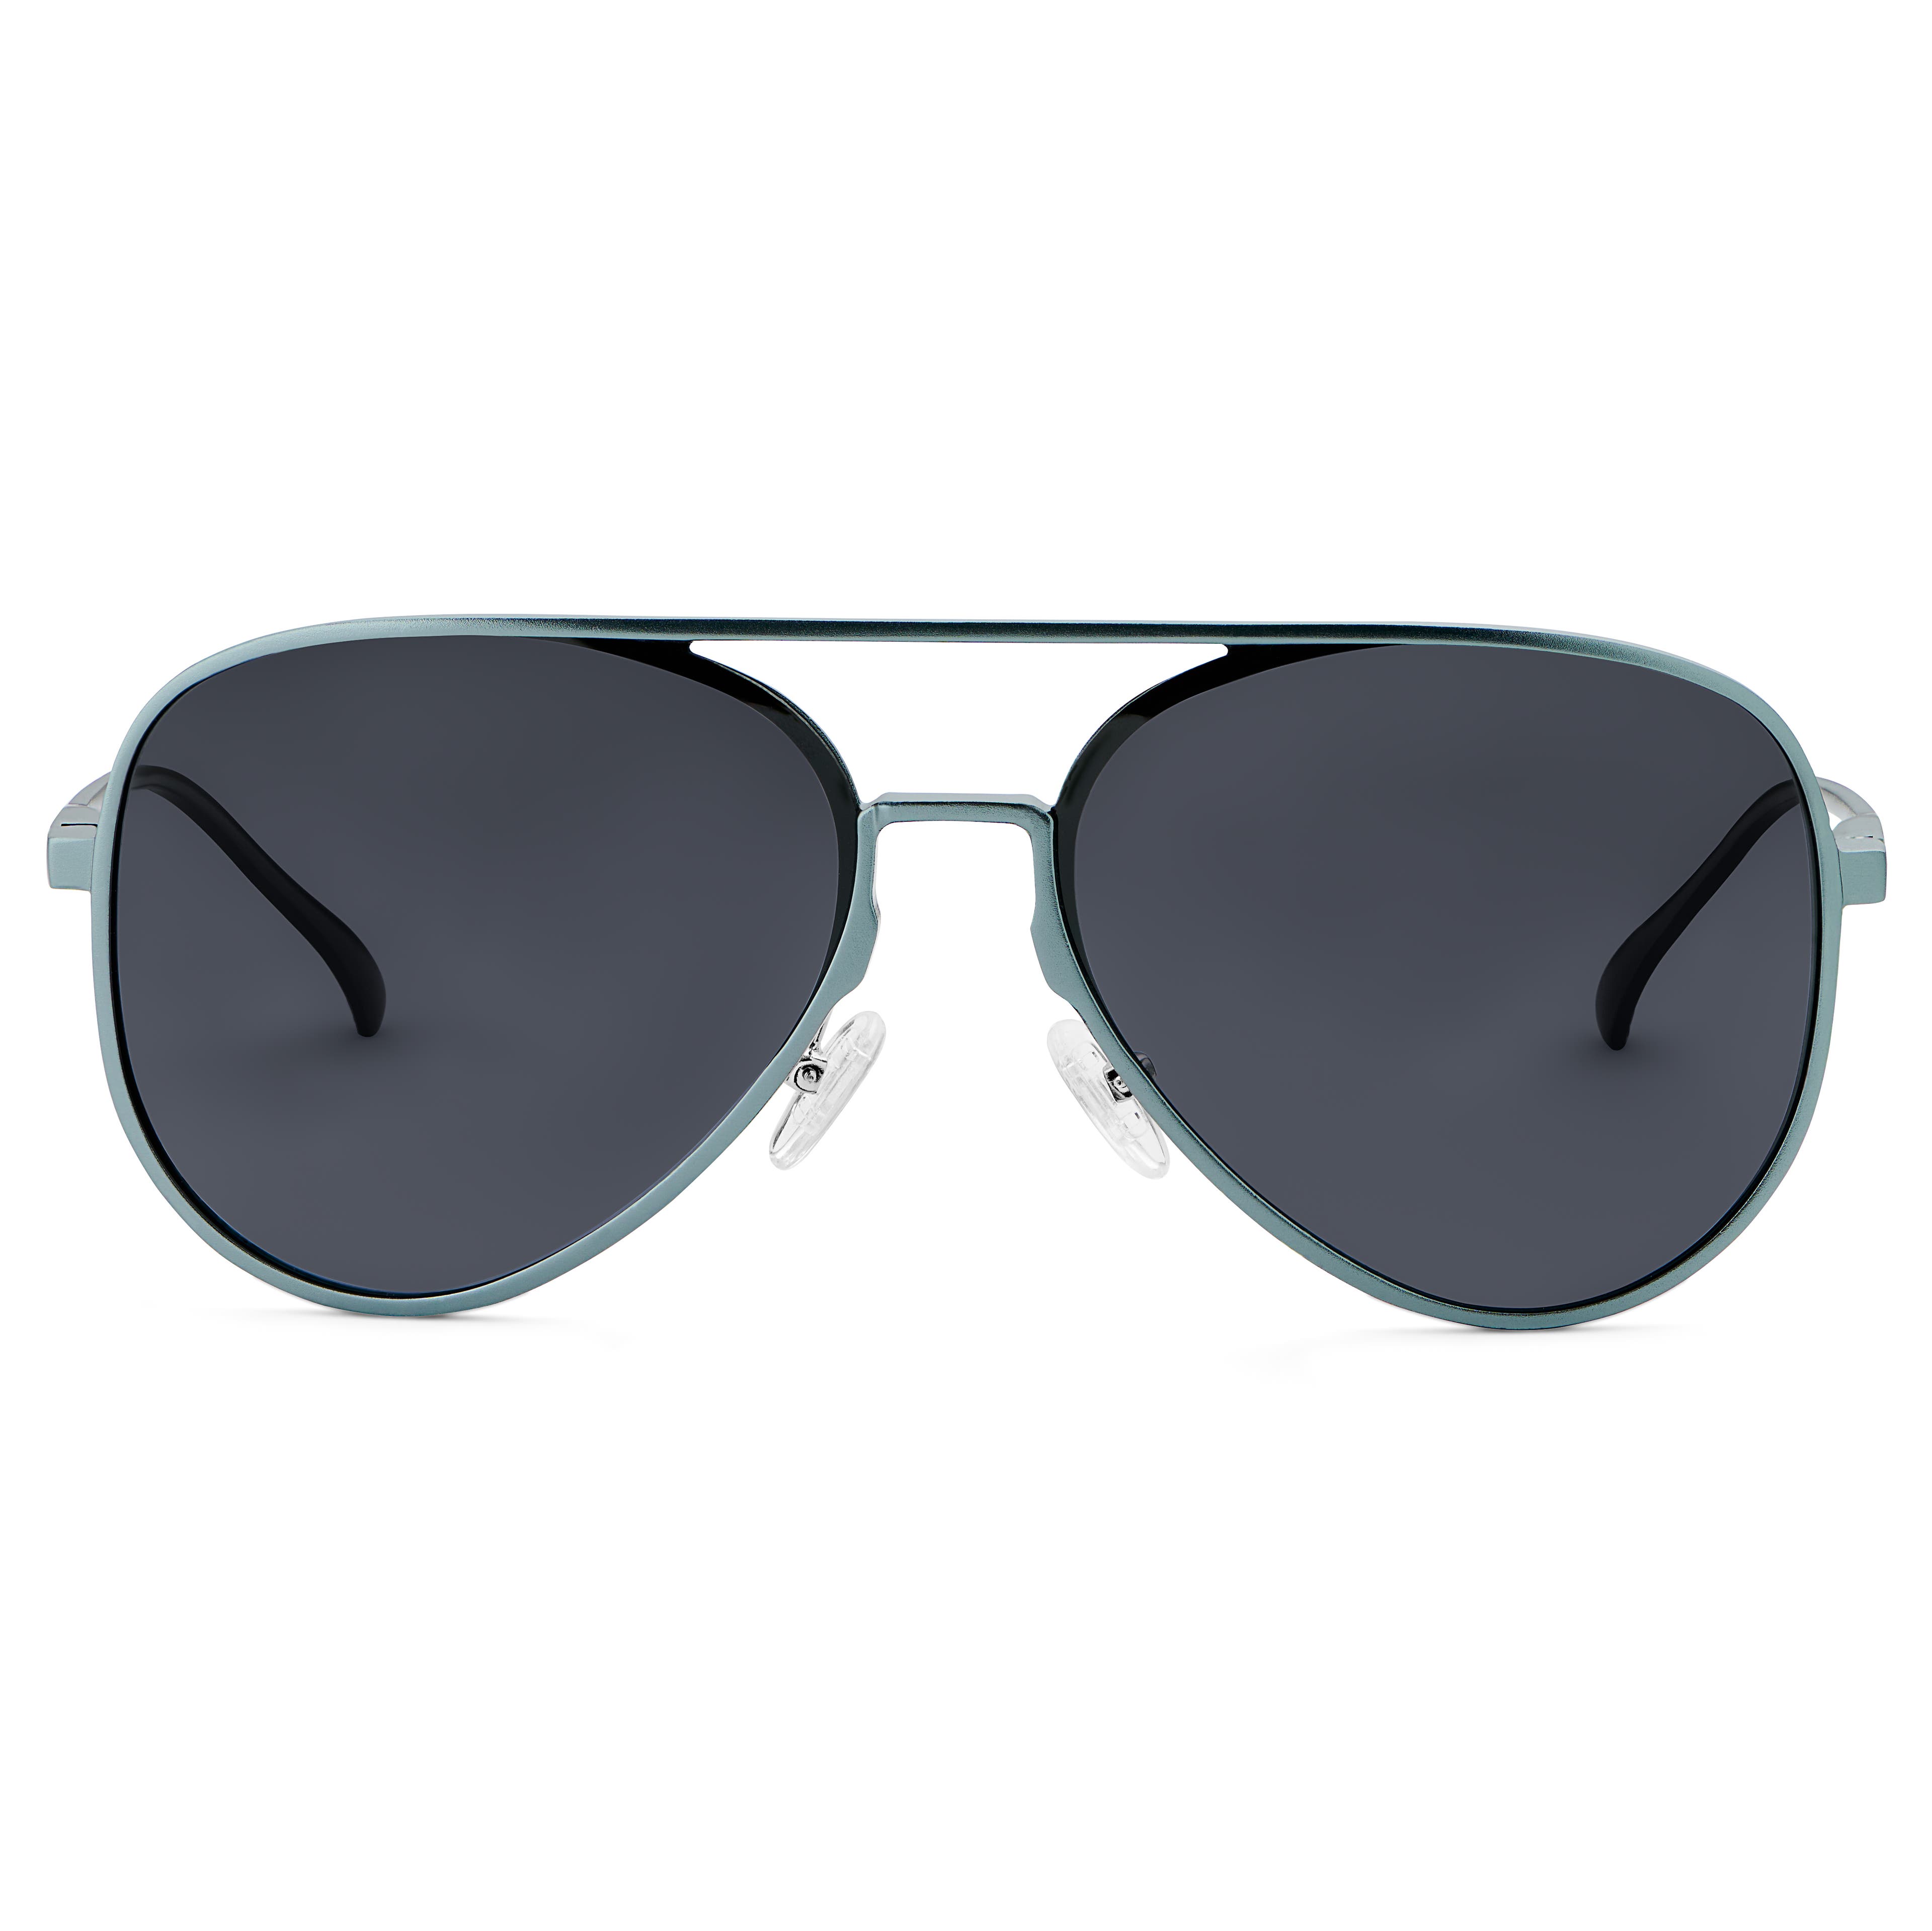 Spiżowo-szare polaryzacyjne okulary przeciwsłoneczne Aviator